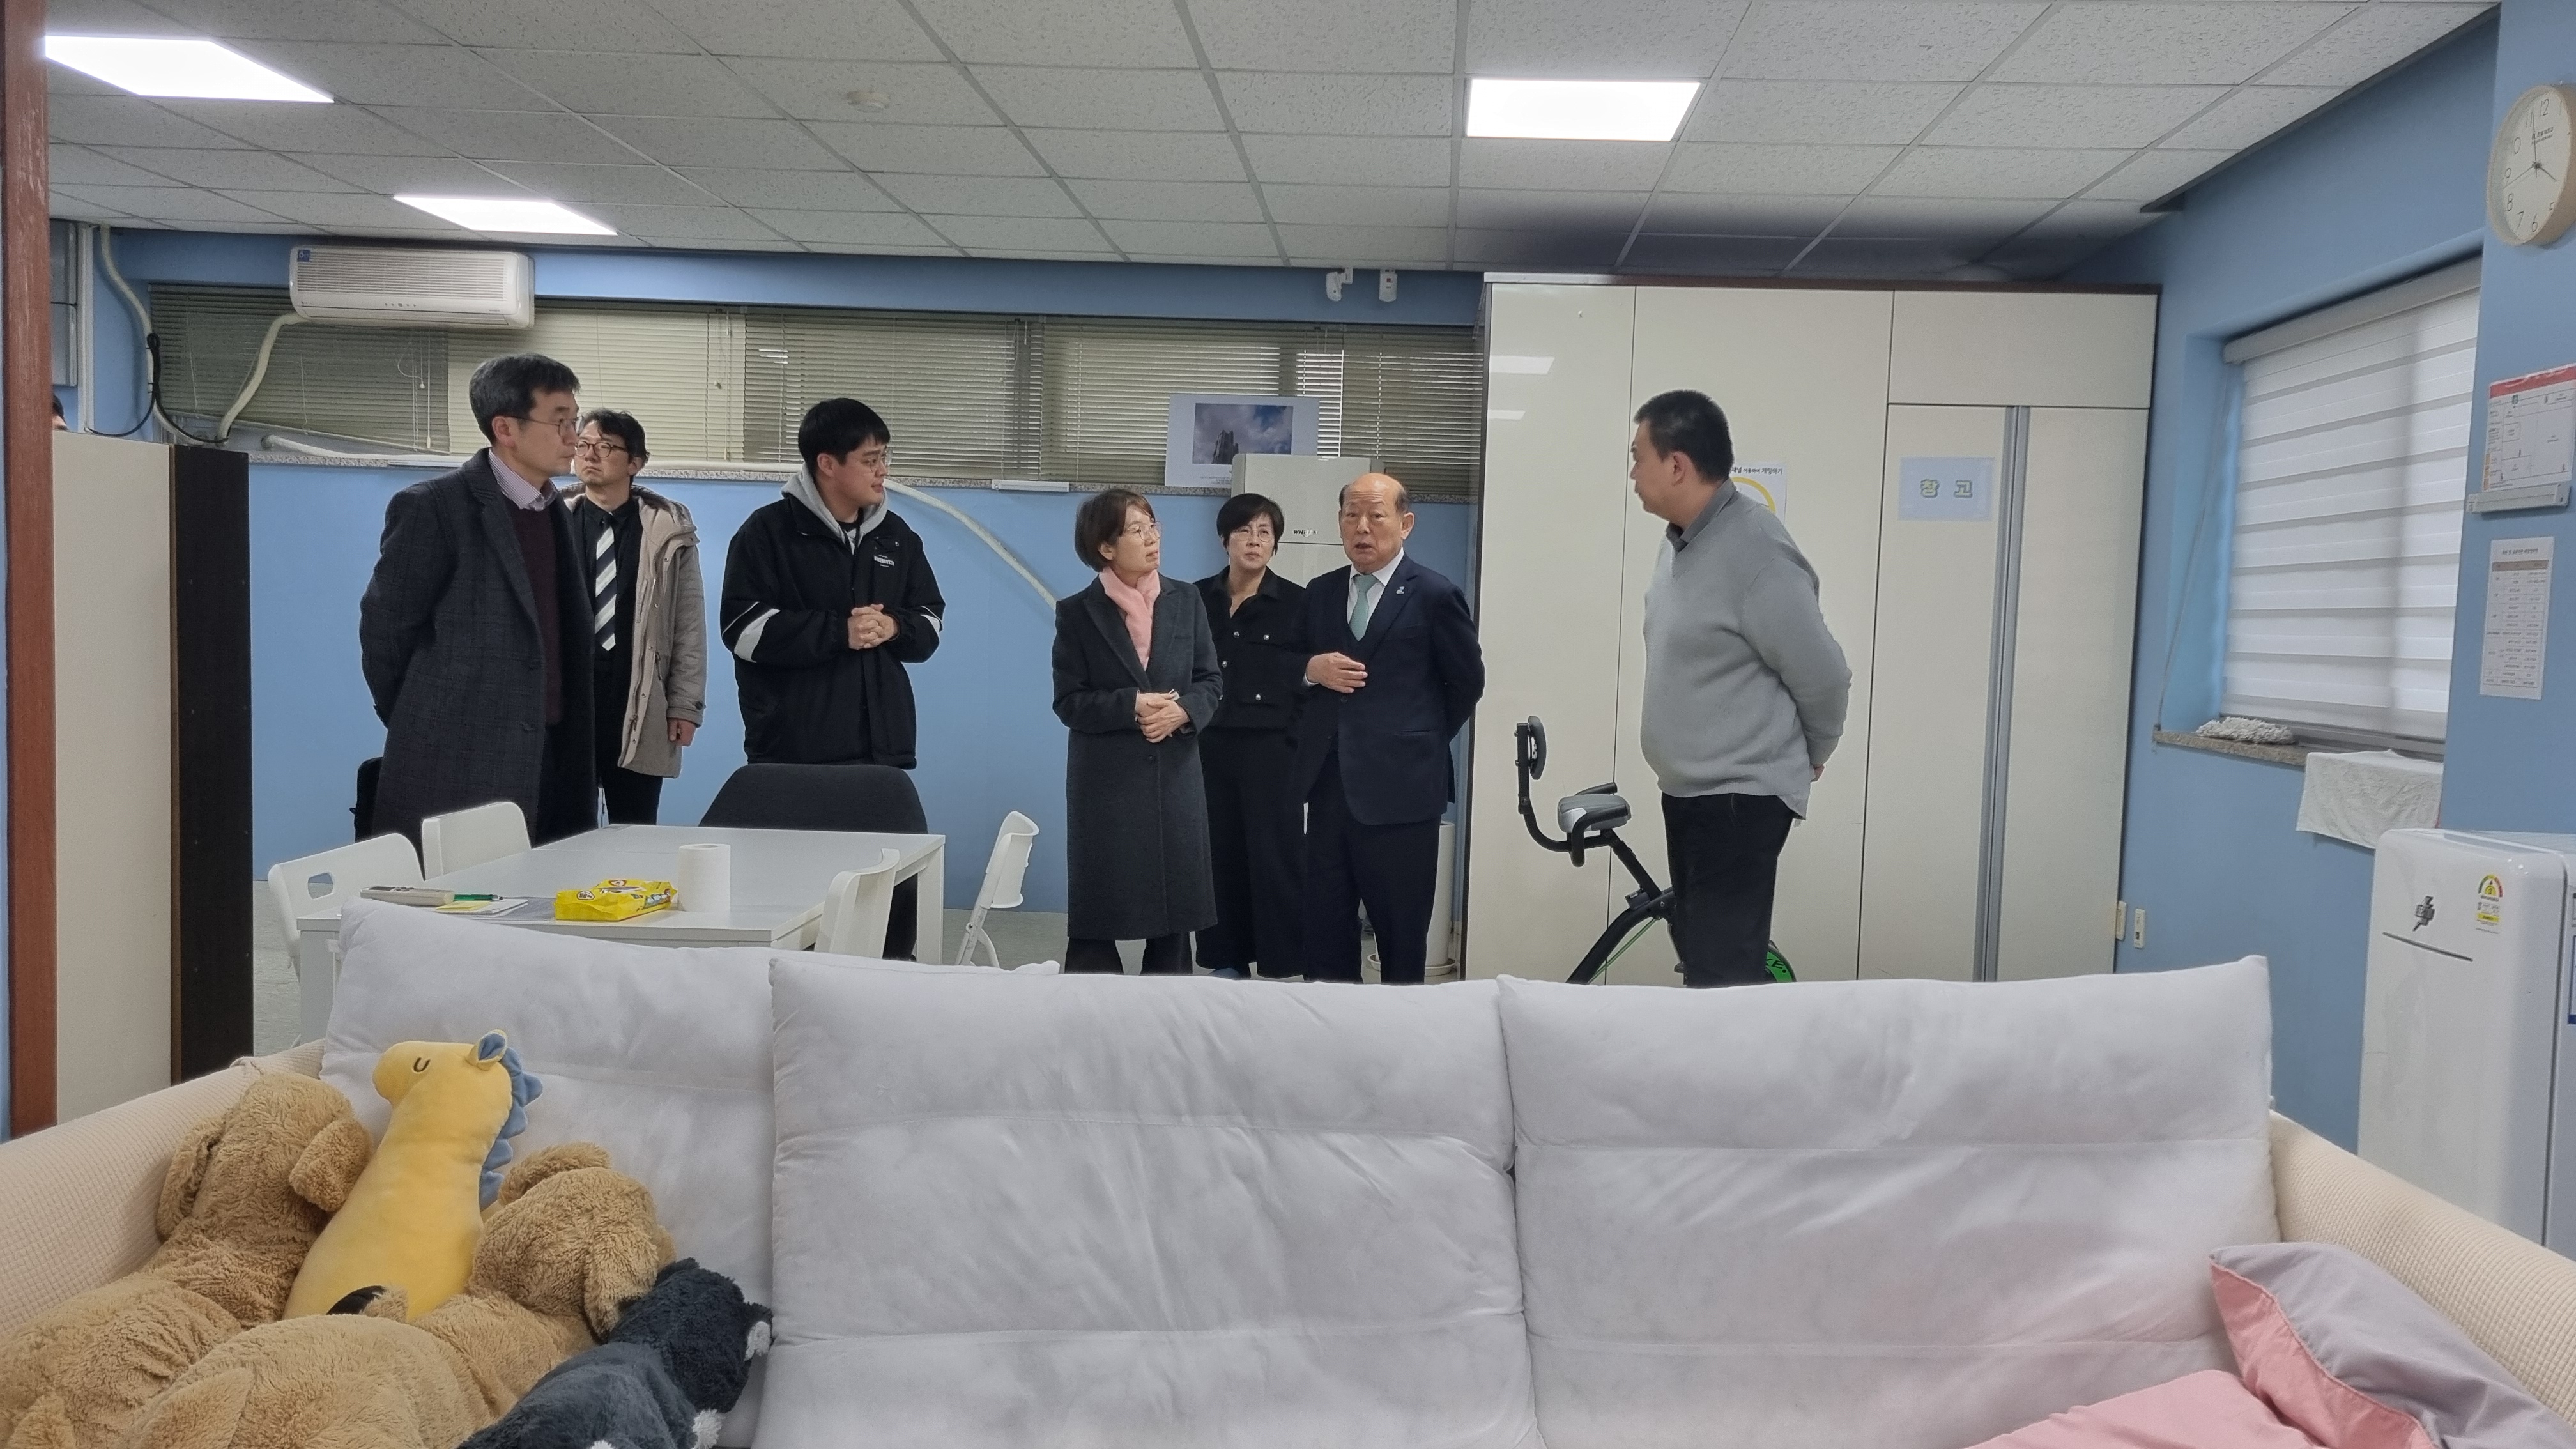 송두환 국가인권위원회 위원장이 2월 6일 오후 송파정신장애동료지원센터를 방문하여 정신장애동료지원쉼터를 살펴보고 있다.  